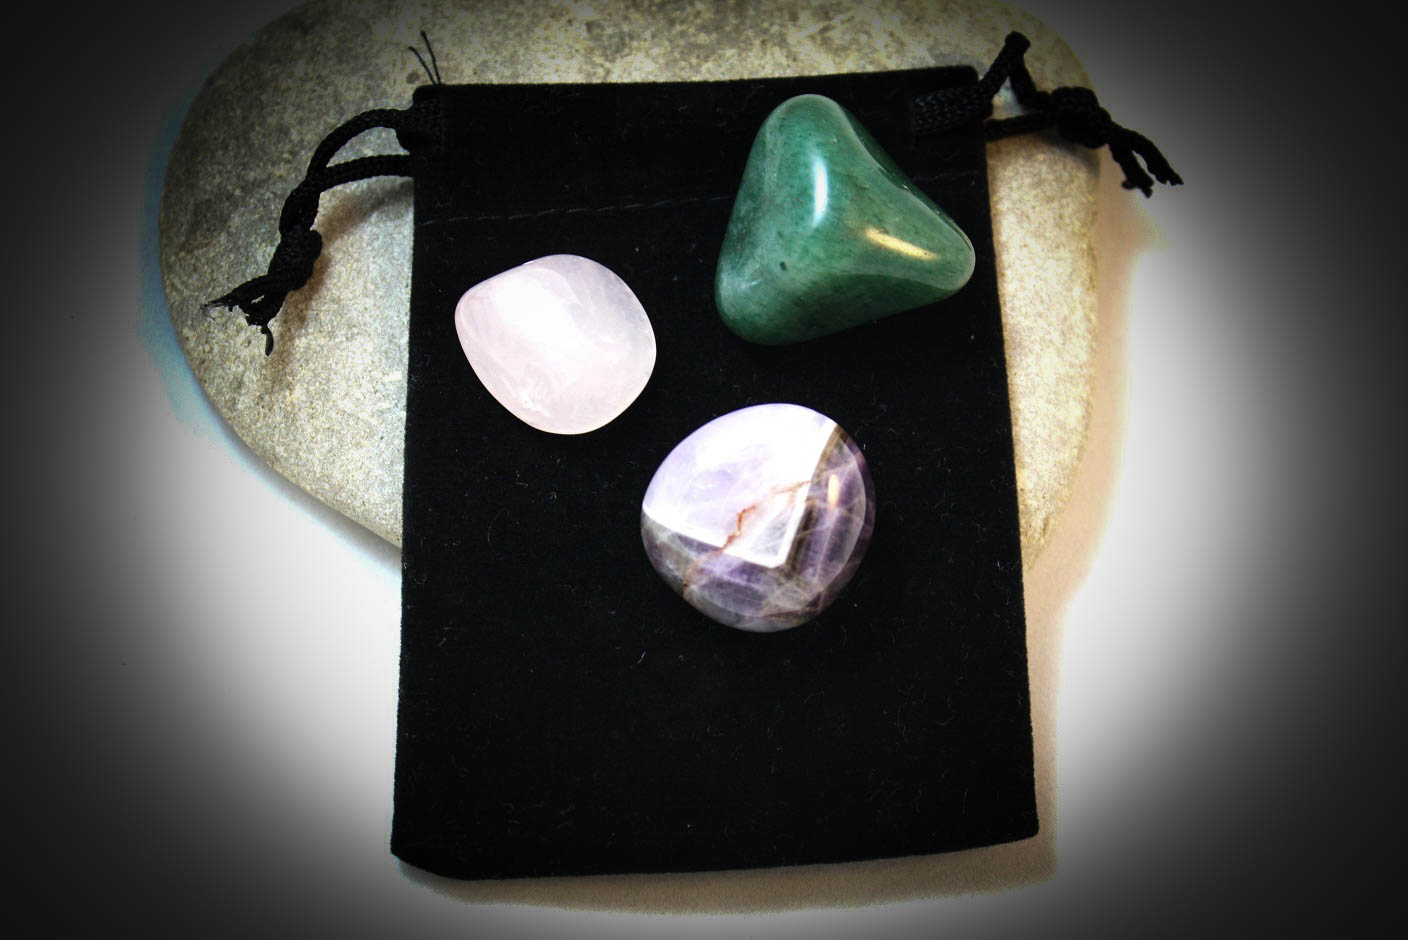 Magic stones